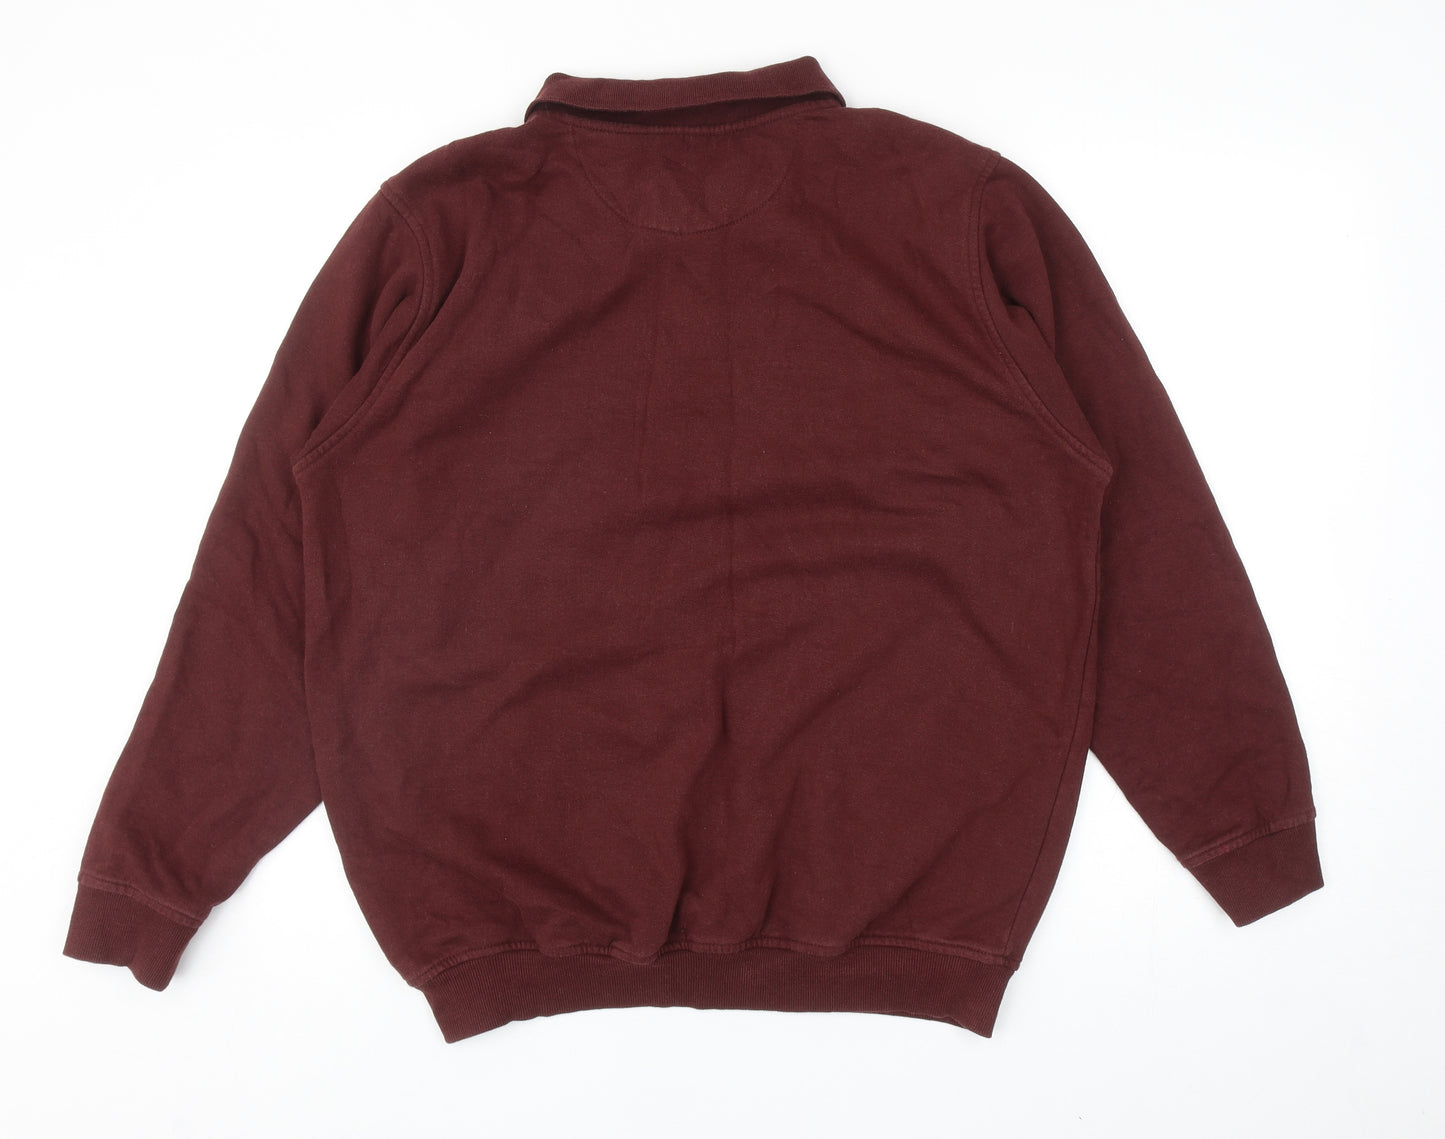 EWM Mens Red Cotton Pullover Sweatshirt Size M